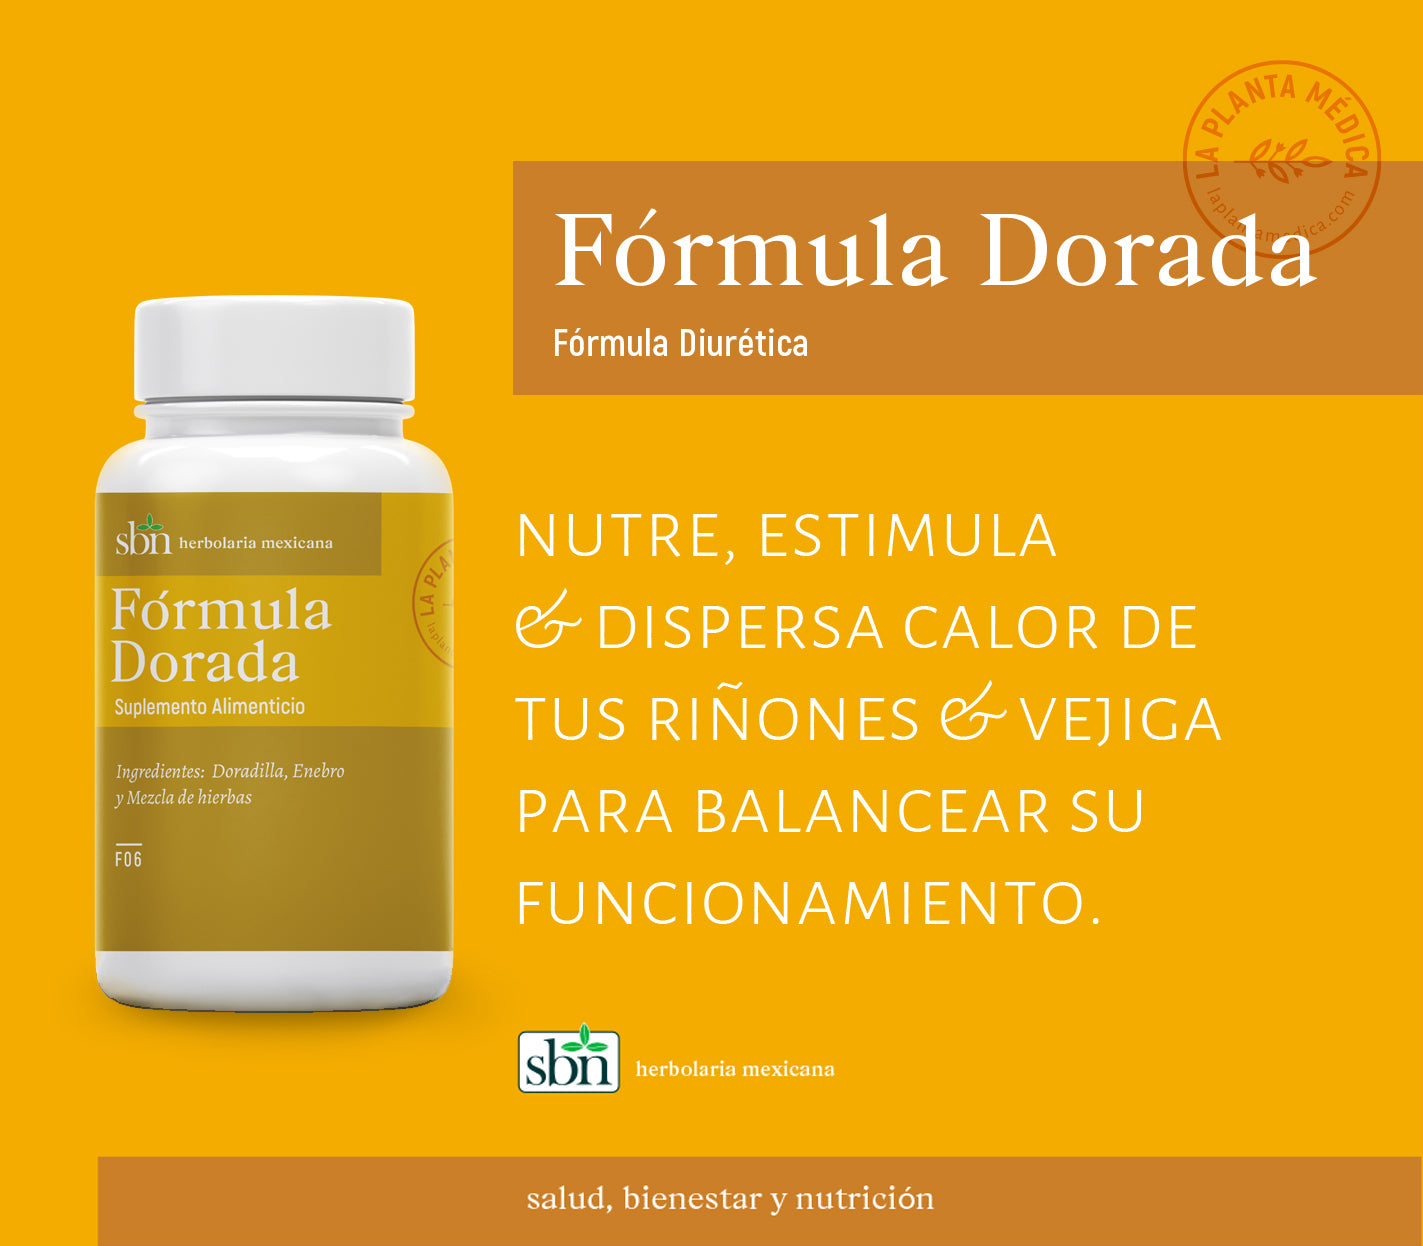 F6 - Formula Dorada